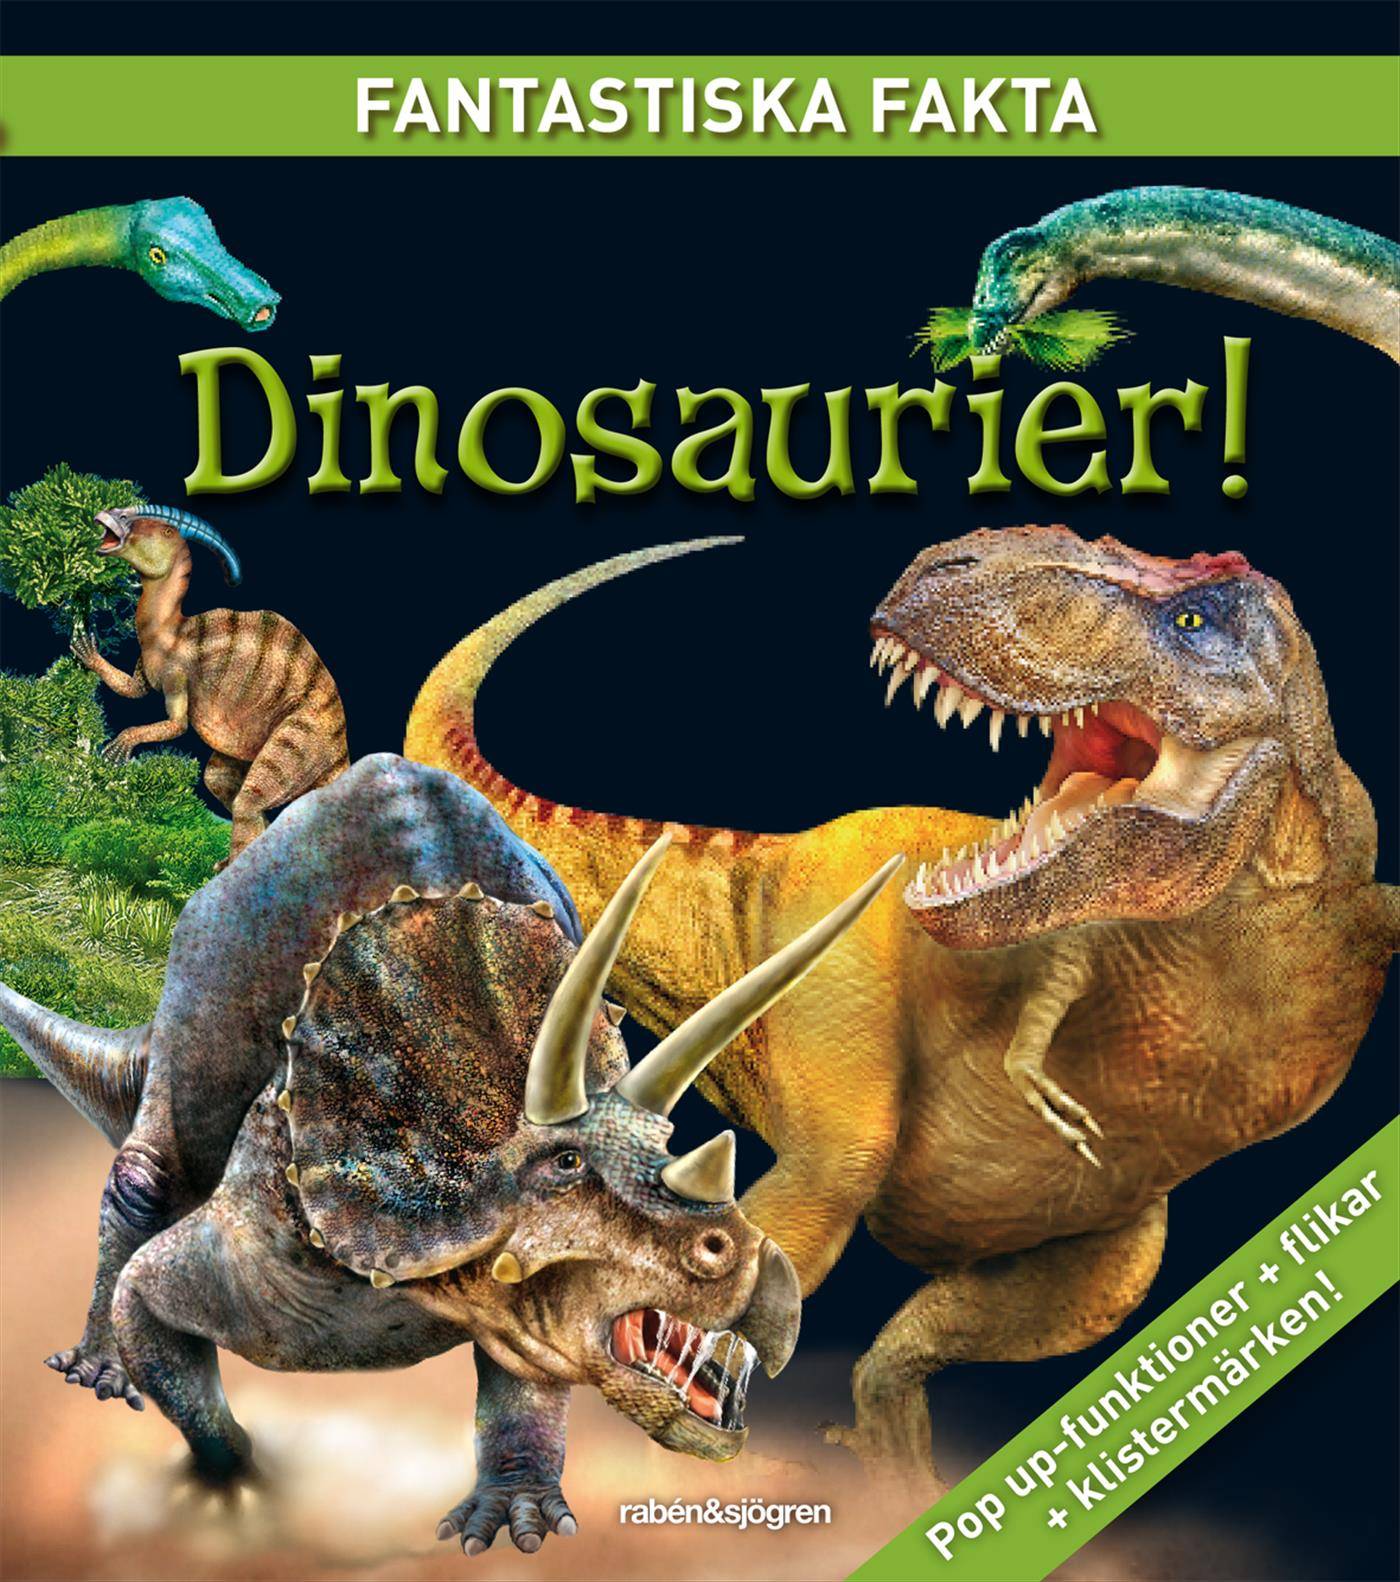 Dinosaurier! - Fantastiska fakta